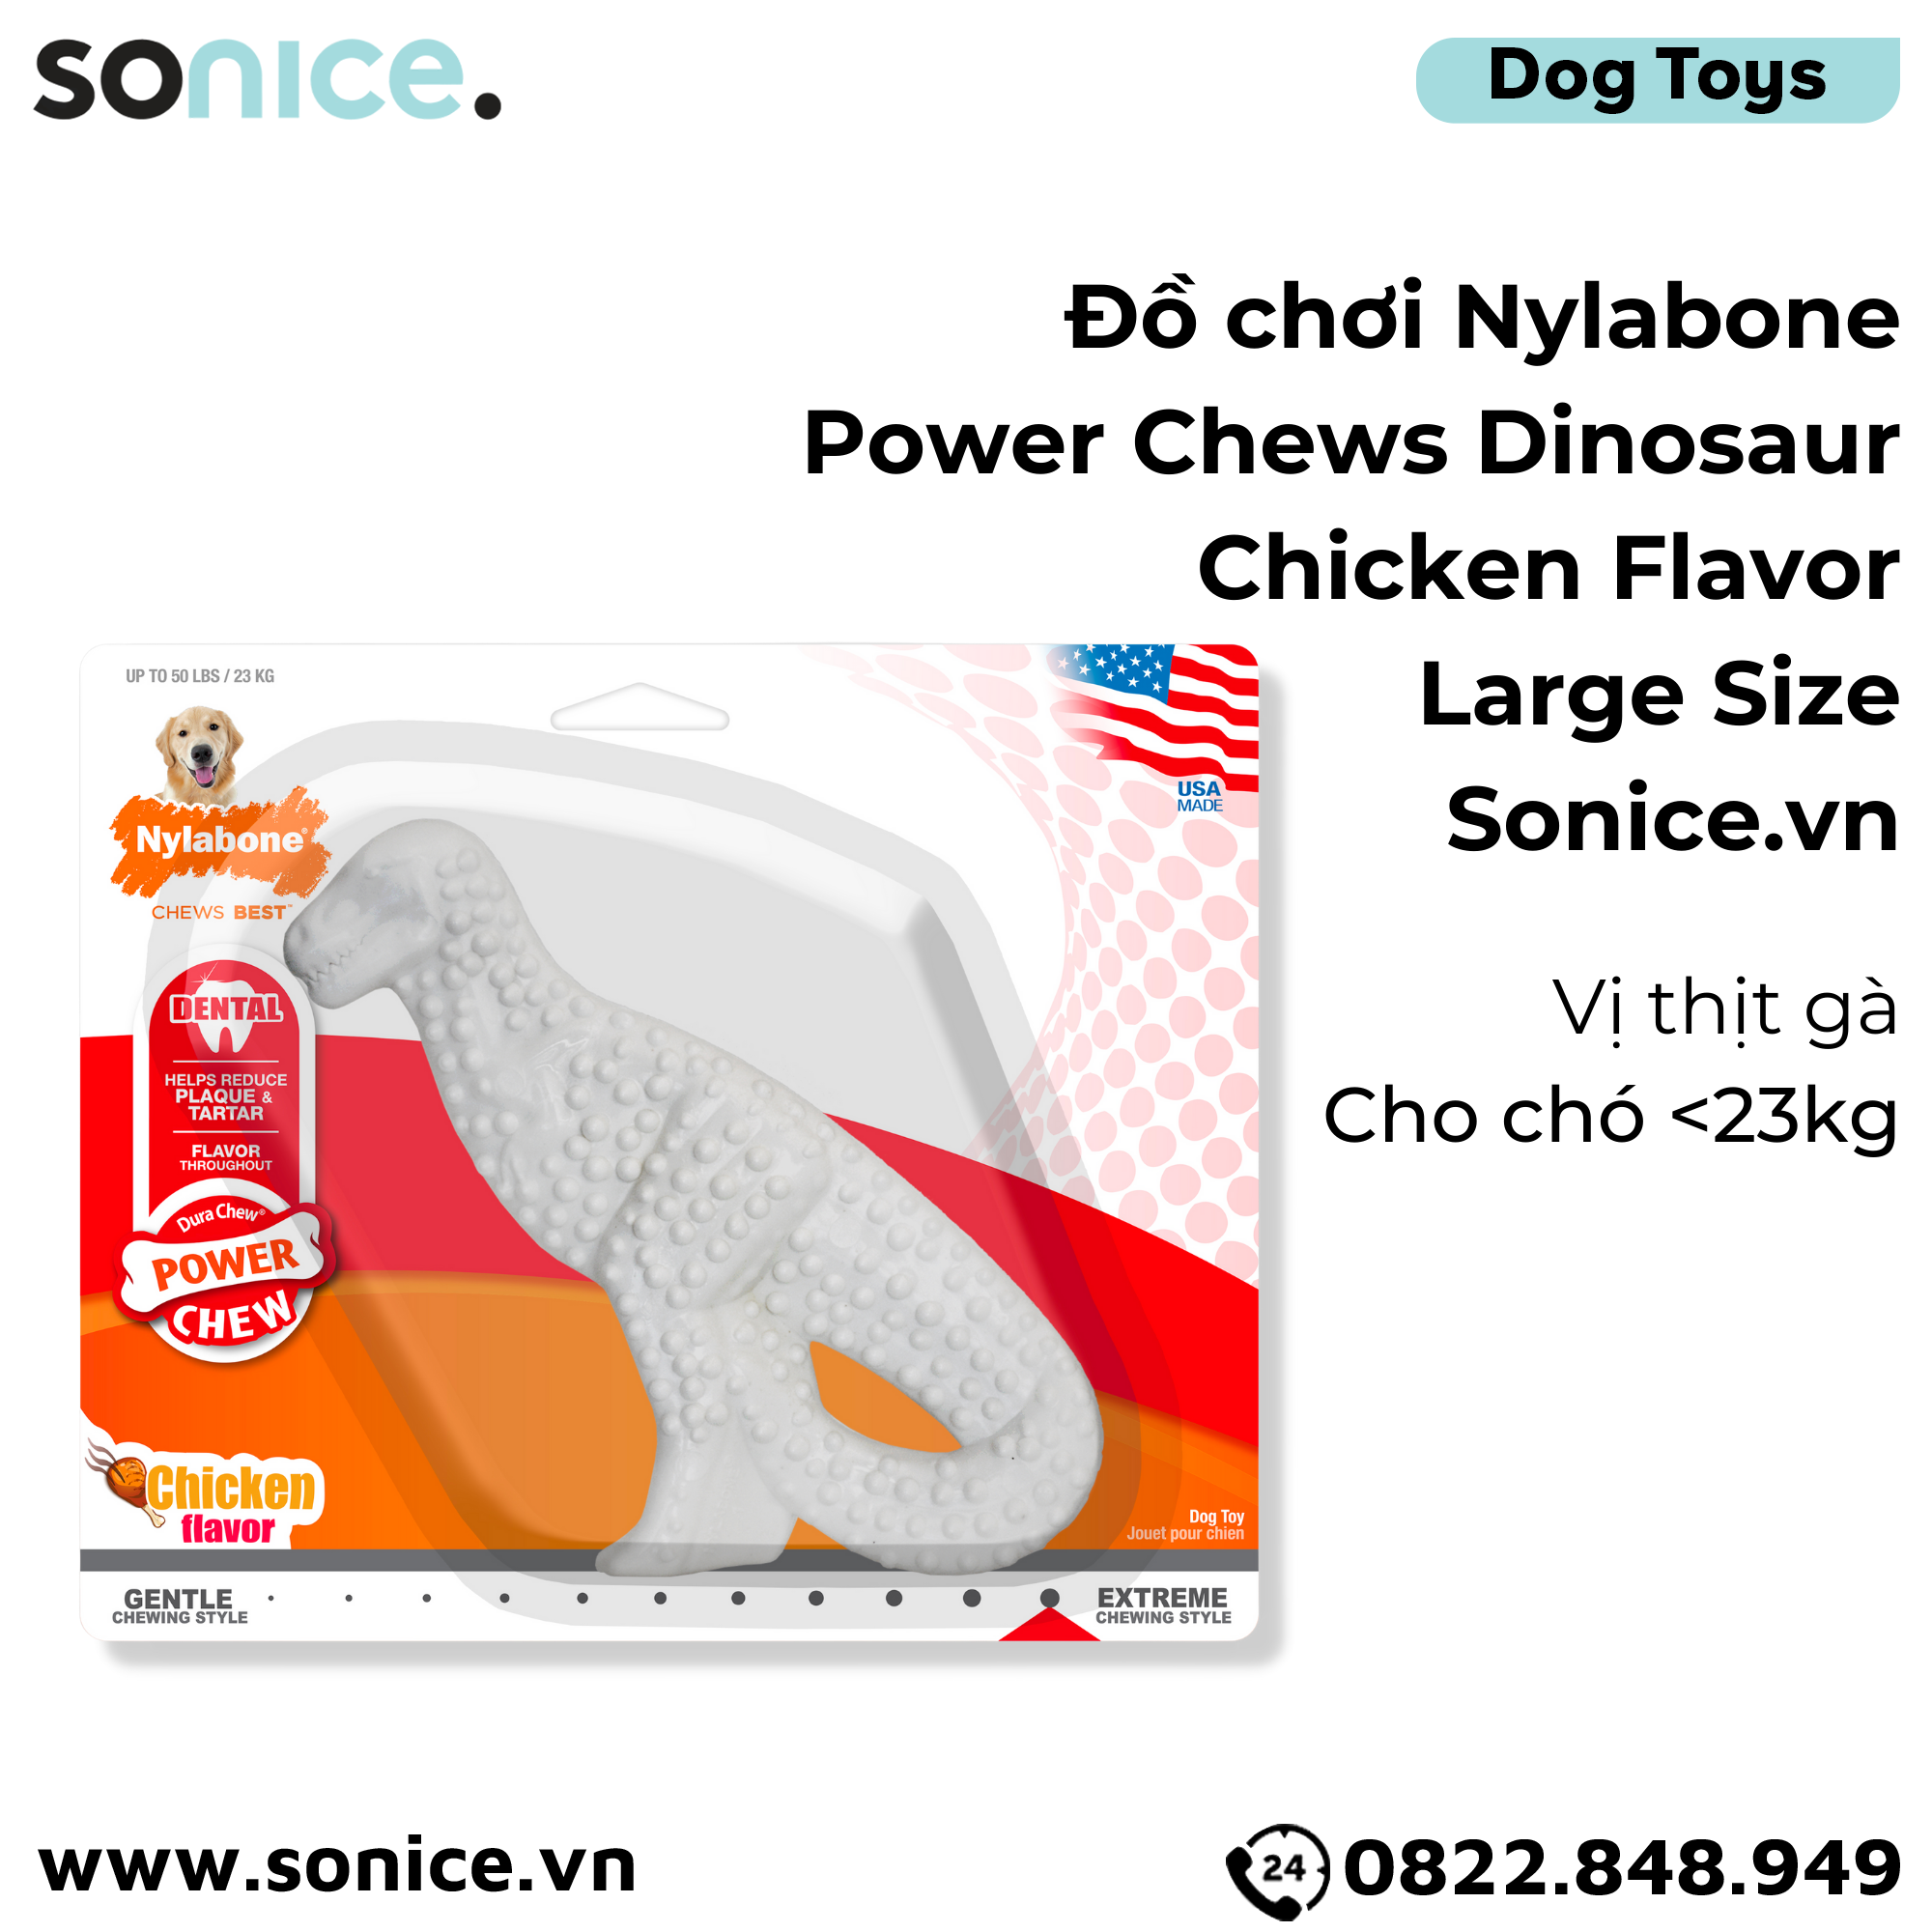  Đồ chơi Nylabone Power Chews Dinosaur Chicken Flavor Toys Large Size - Vị thịt gà, cho chó < 23kg SONICE. 